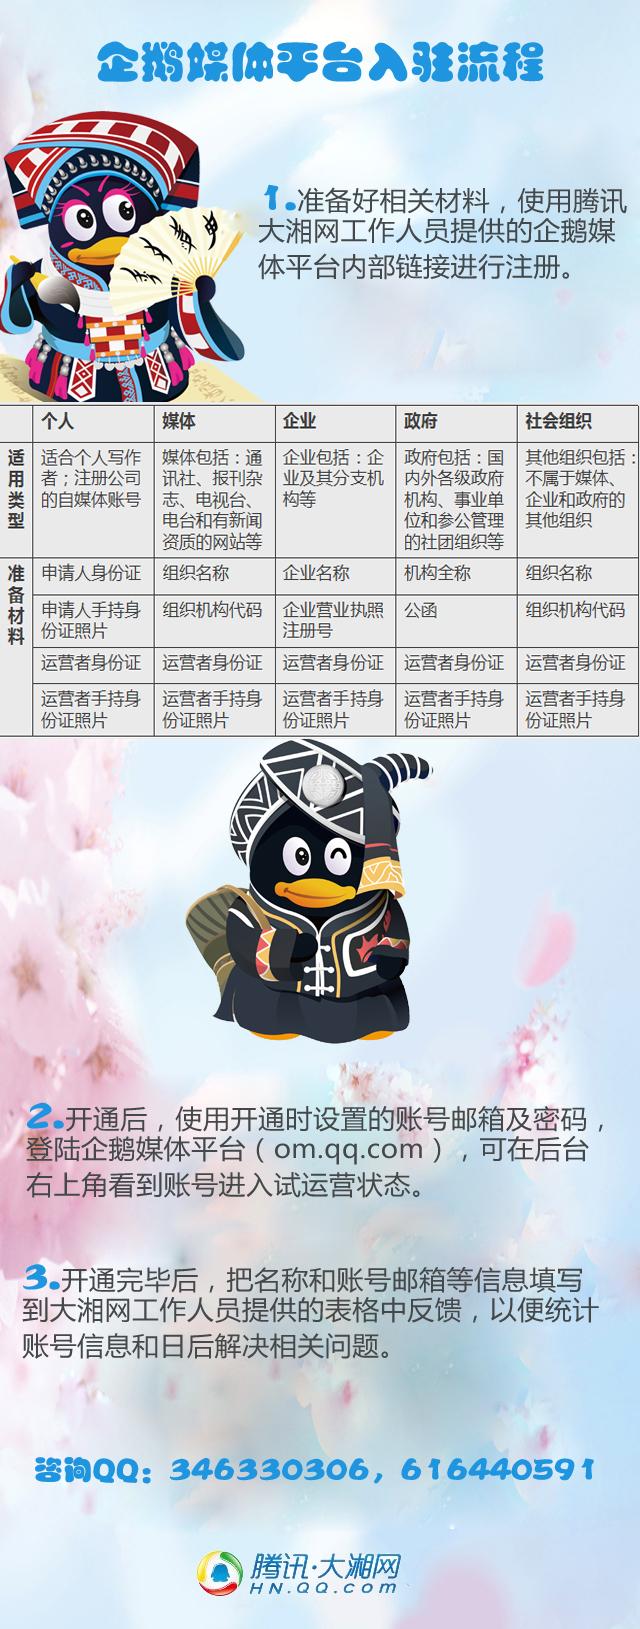 湖南安监系统入驻企鹅媒体平台 企鹅号开放征